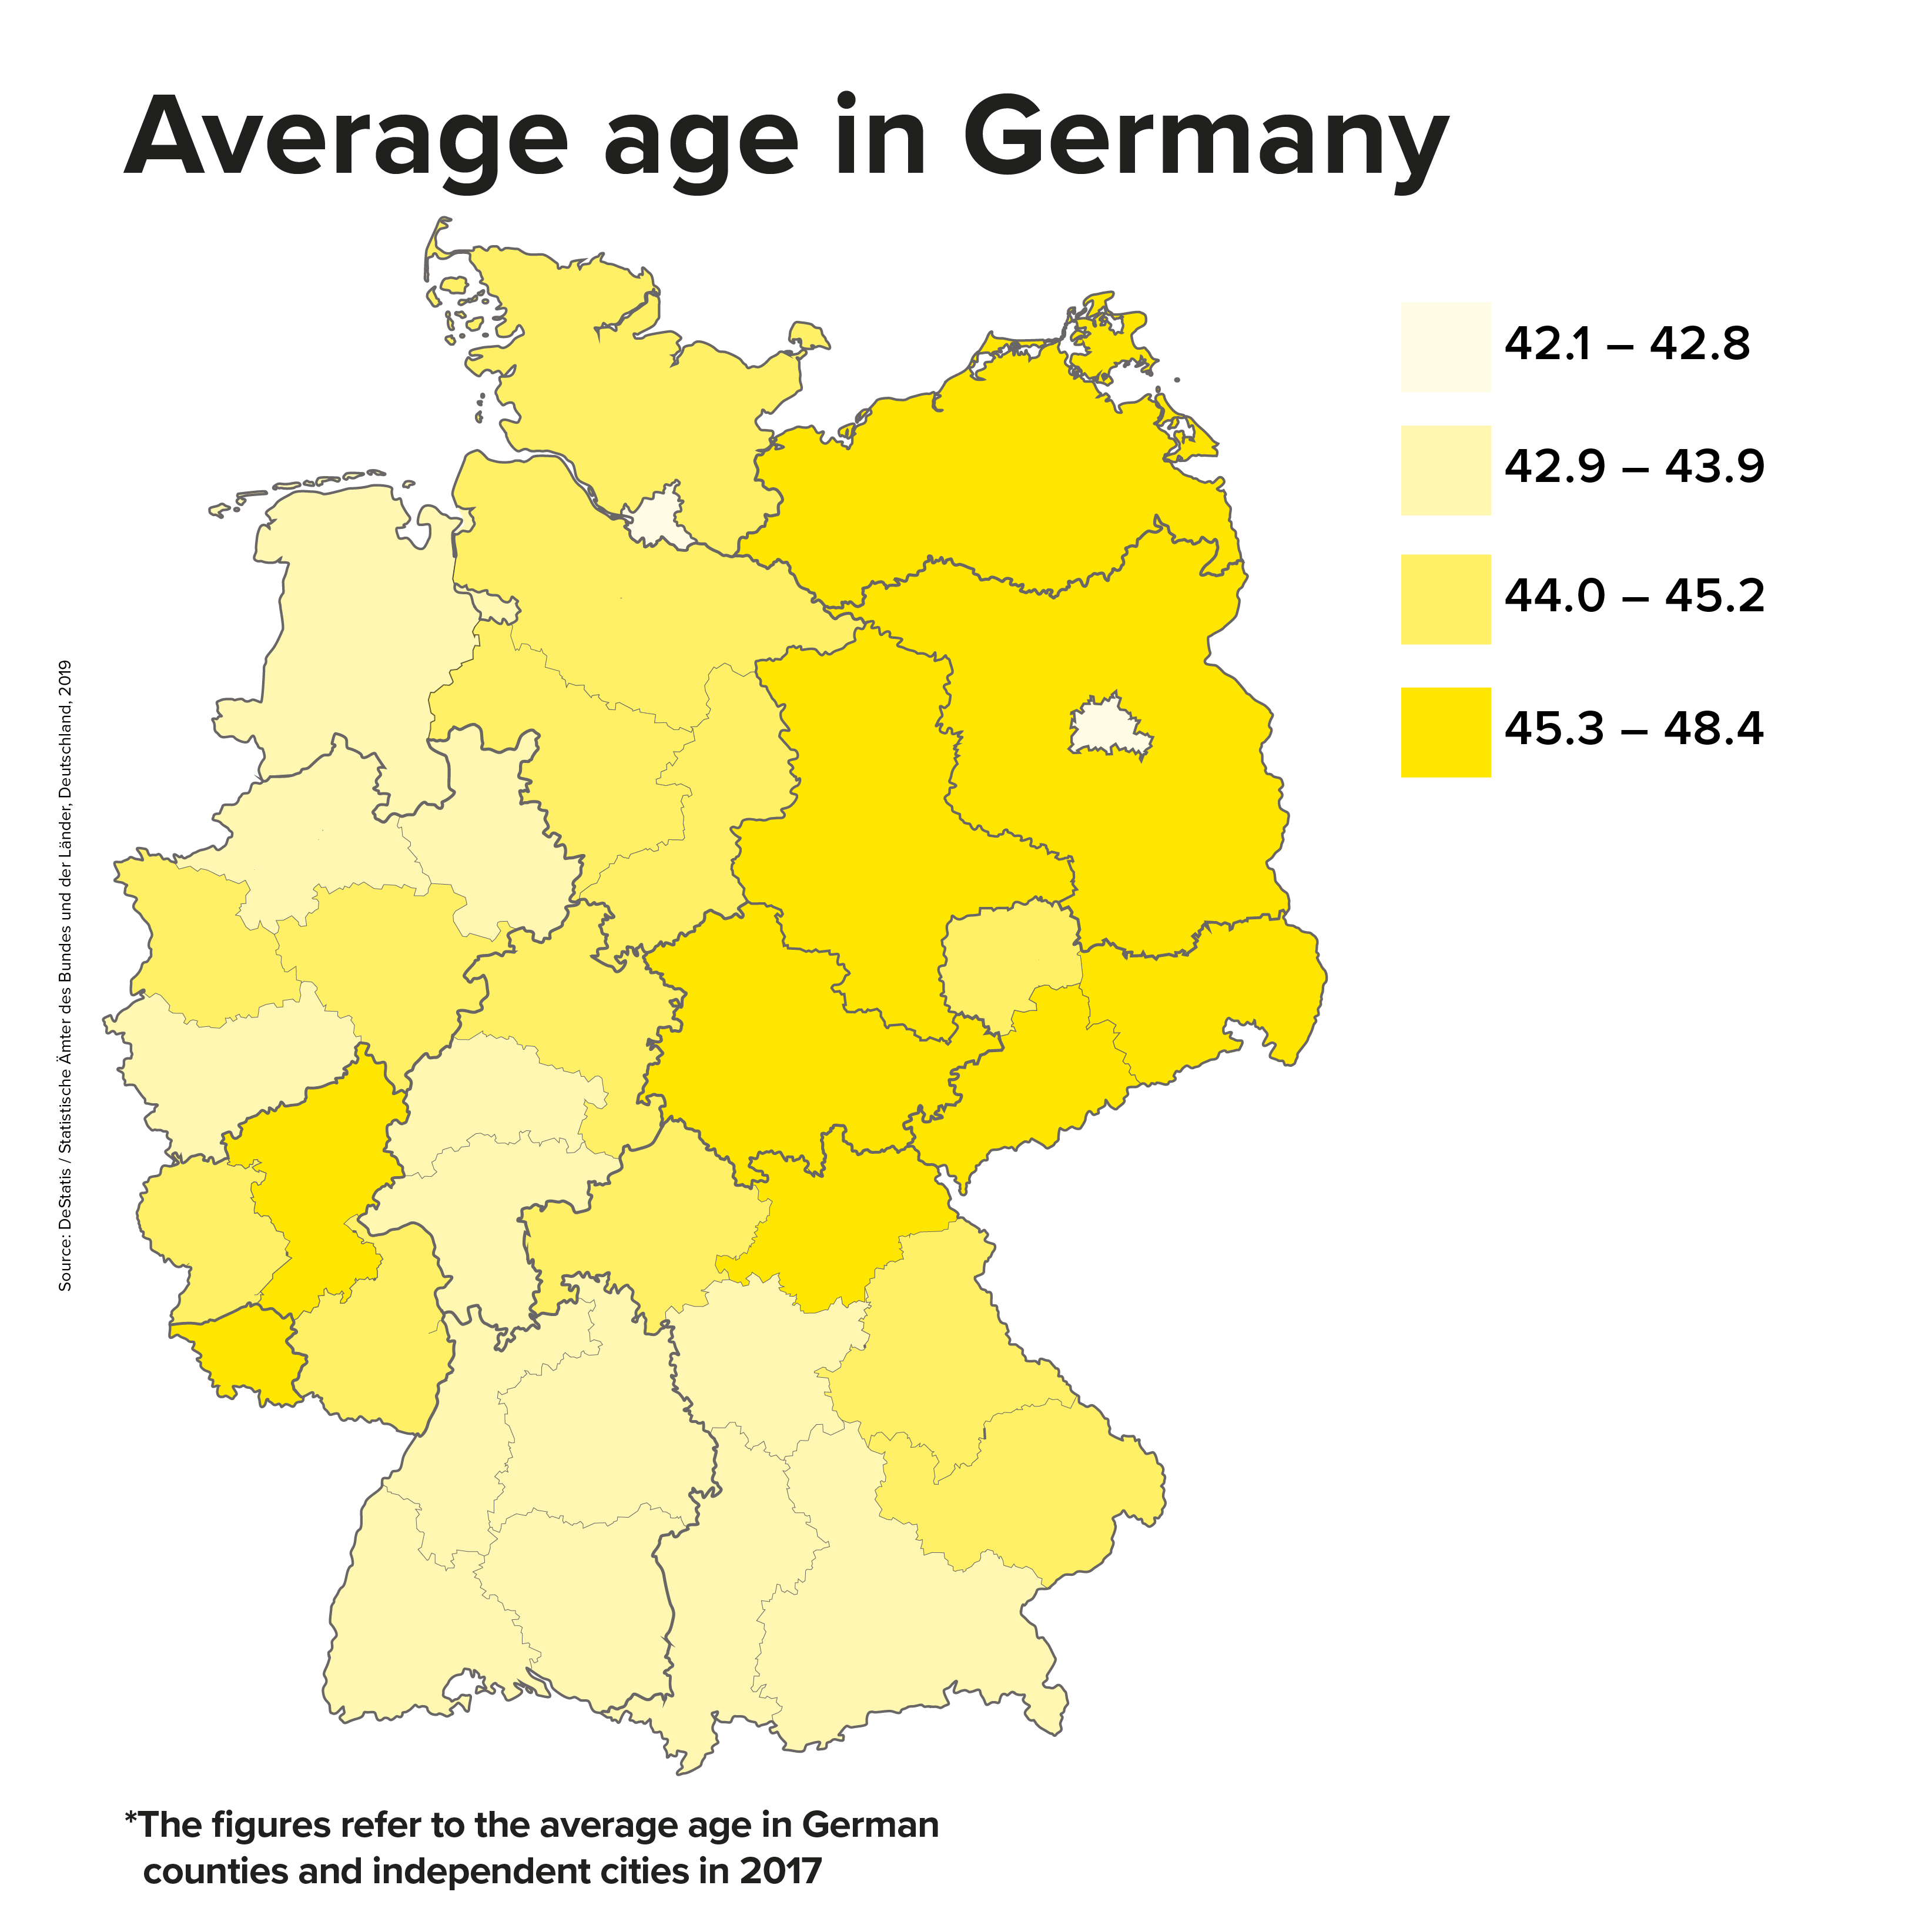 Germany: average age